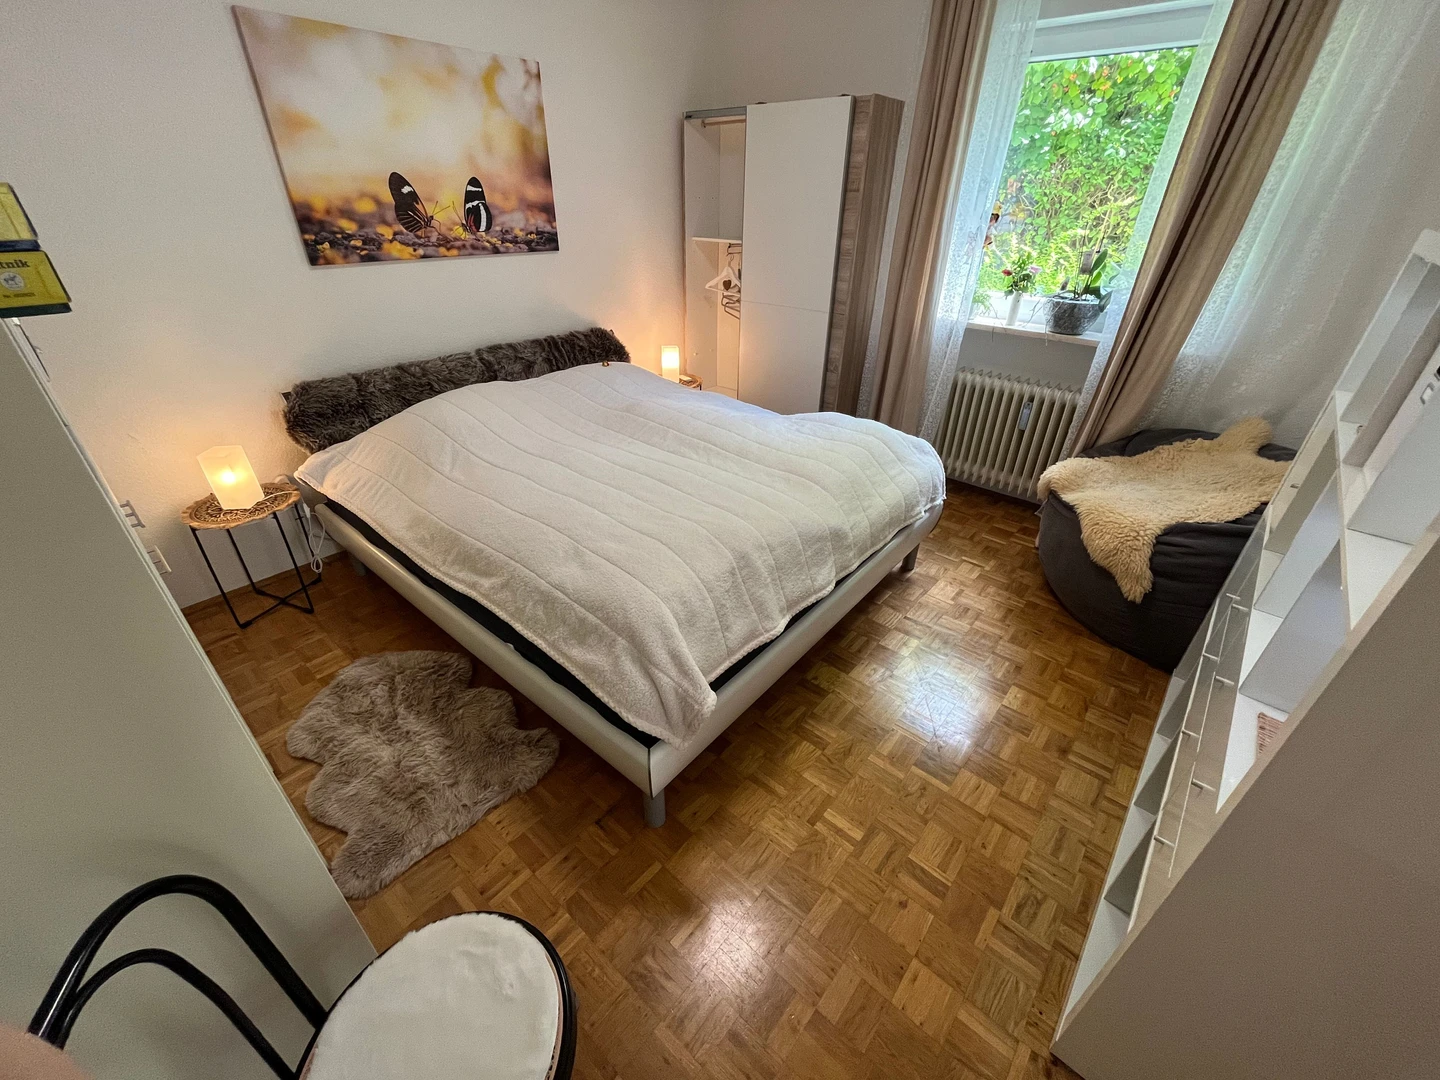 Monatliche Vermietung von Zimmern in Erlangen